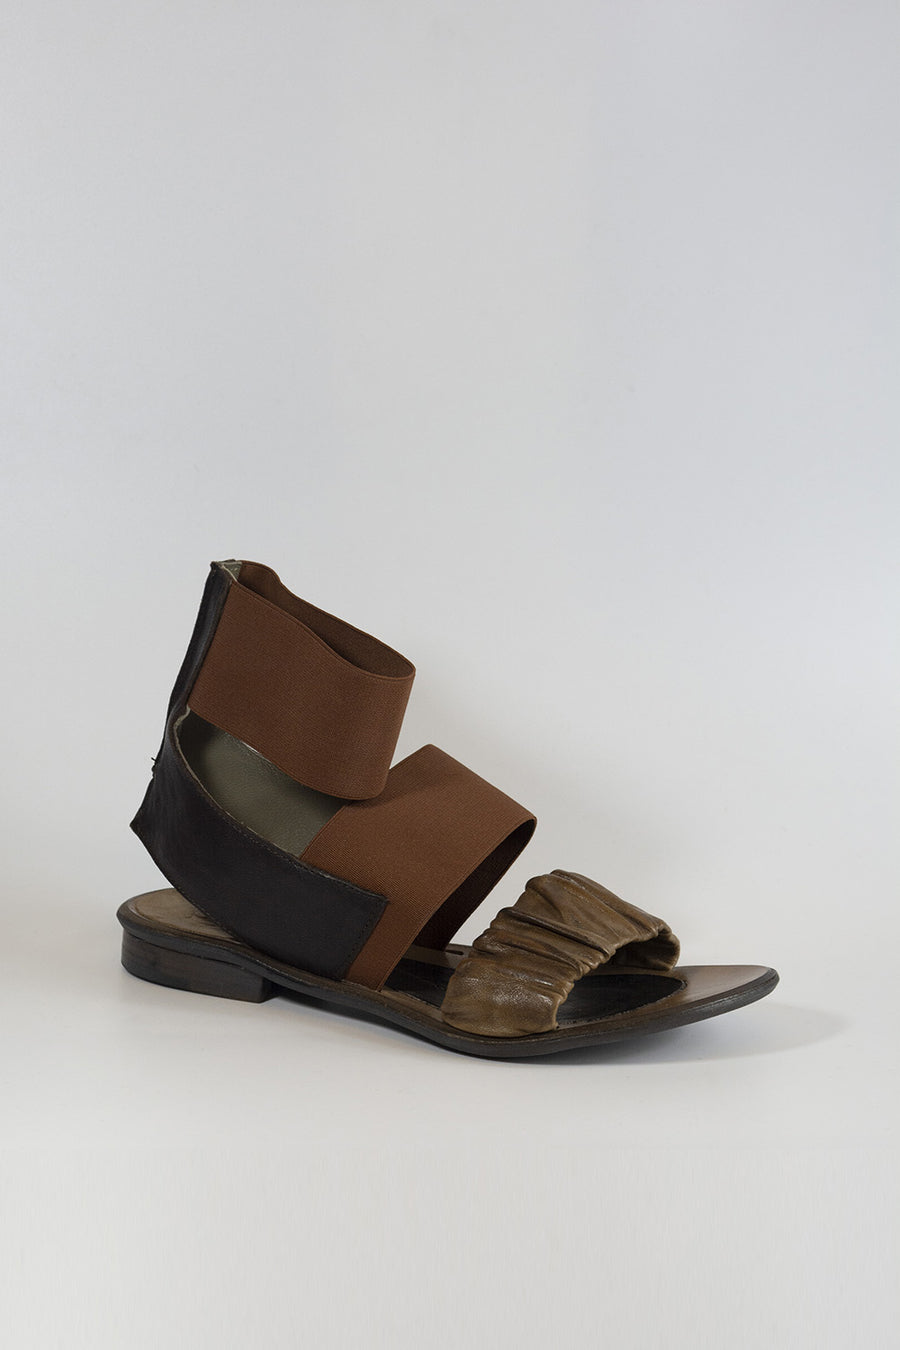 Sandalo Ixos da donna in pelle color marrone e taupe X11E55010